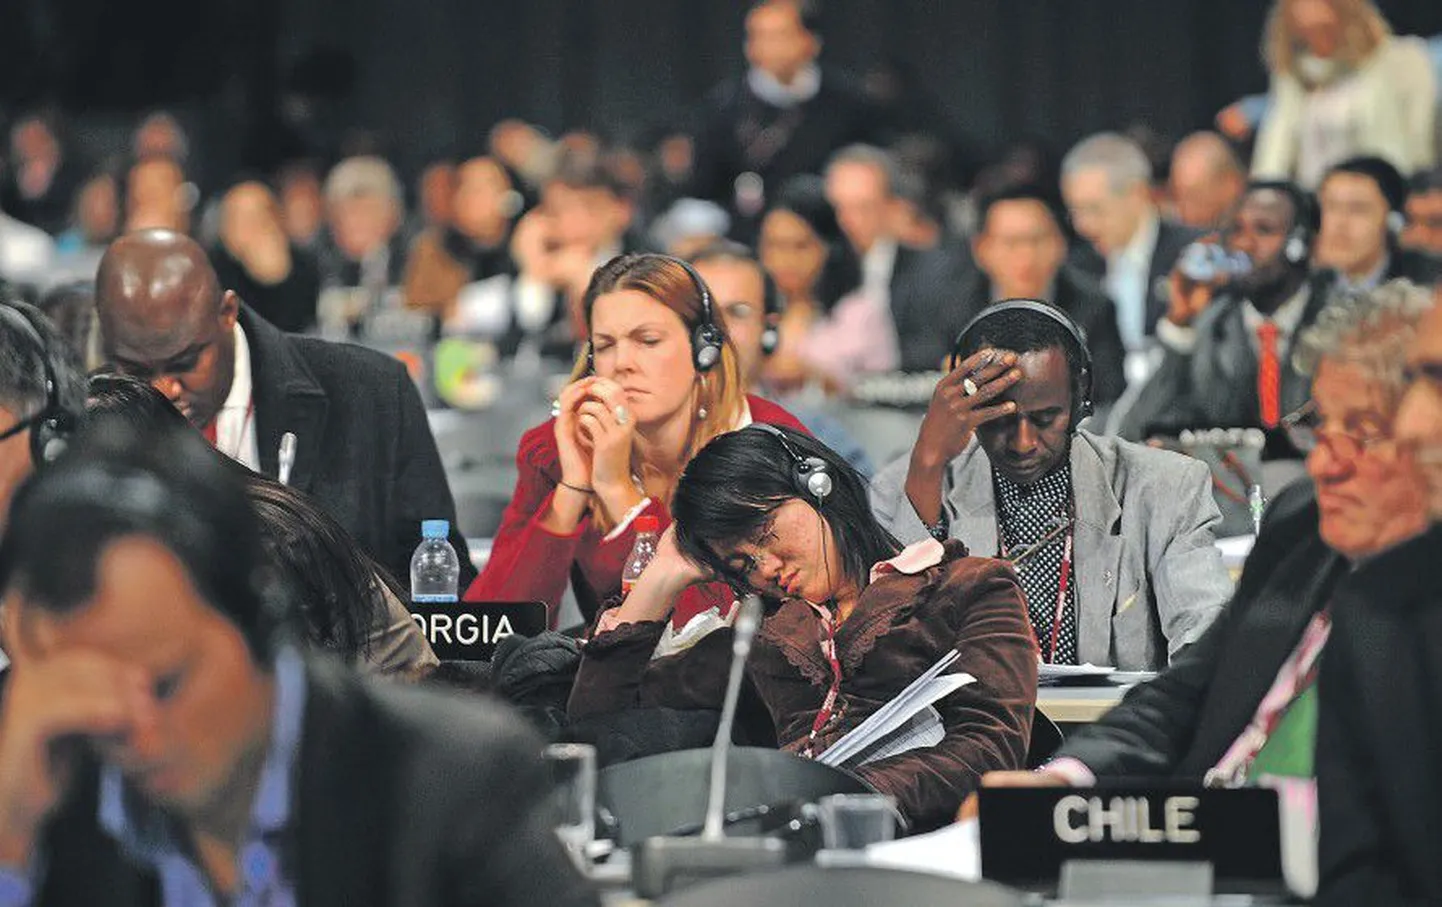 Затянувшаяся конференция по изменению климата в Копенгагене была с трудом завершена и не устранила существующие между странами противоречия.